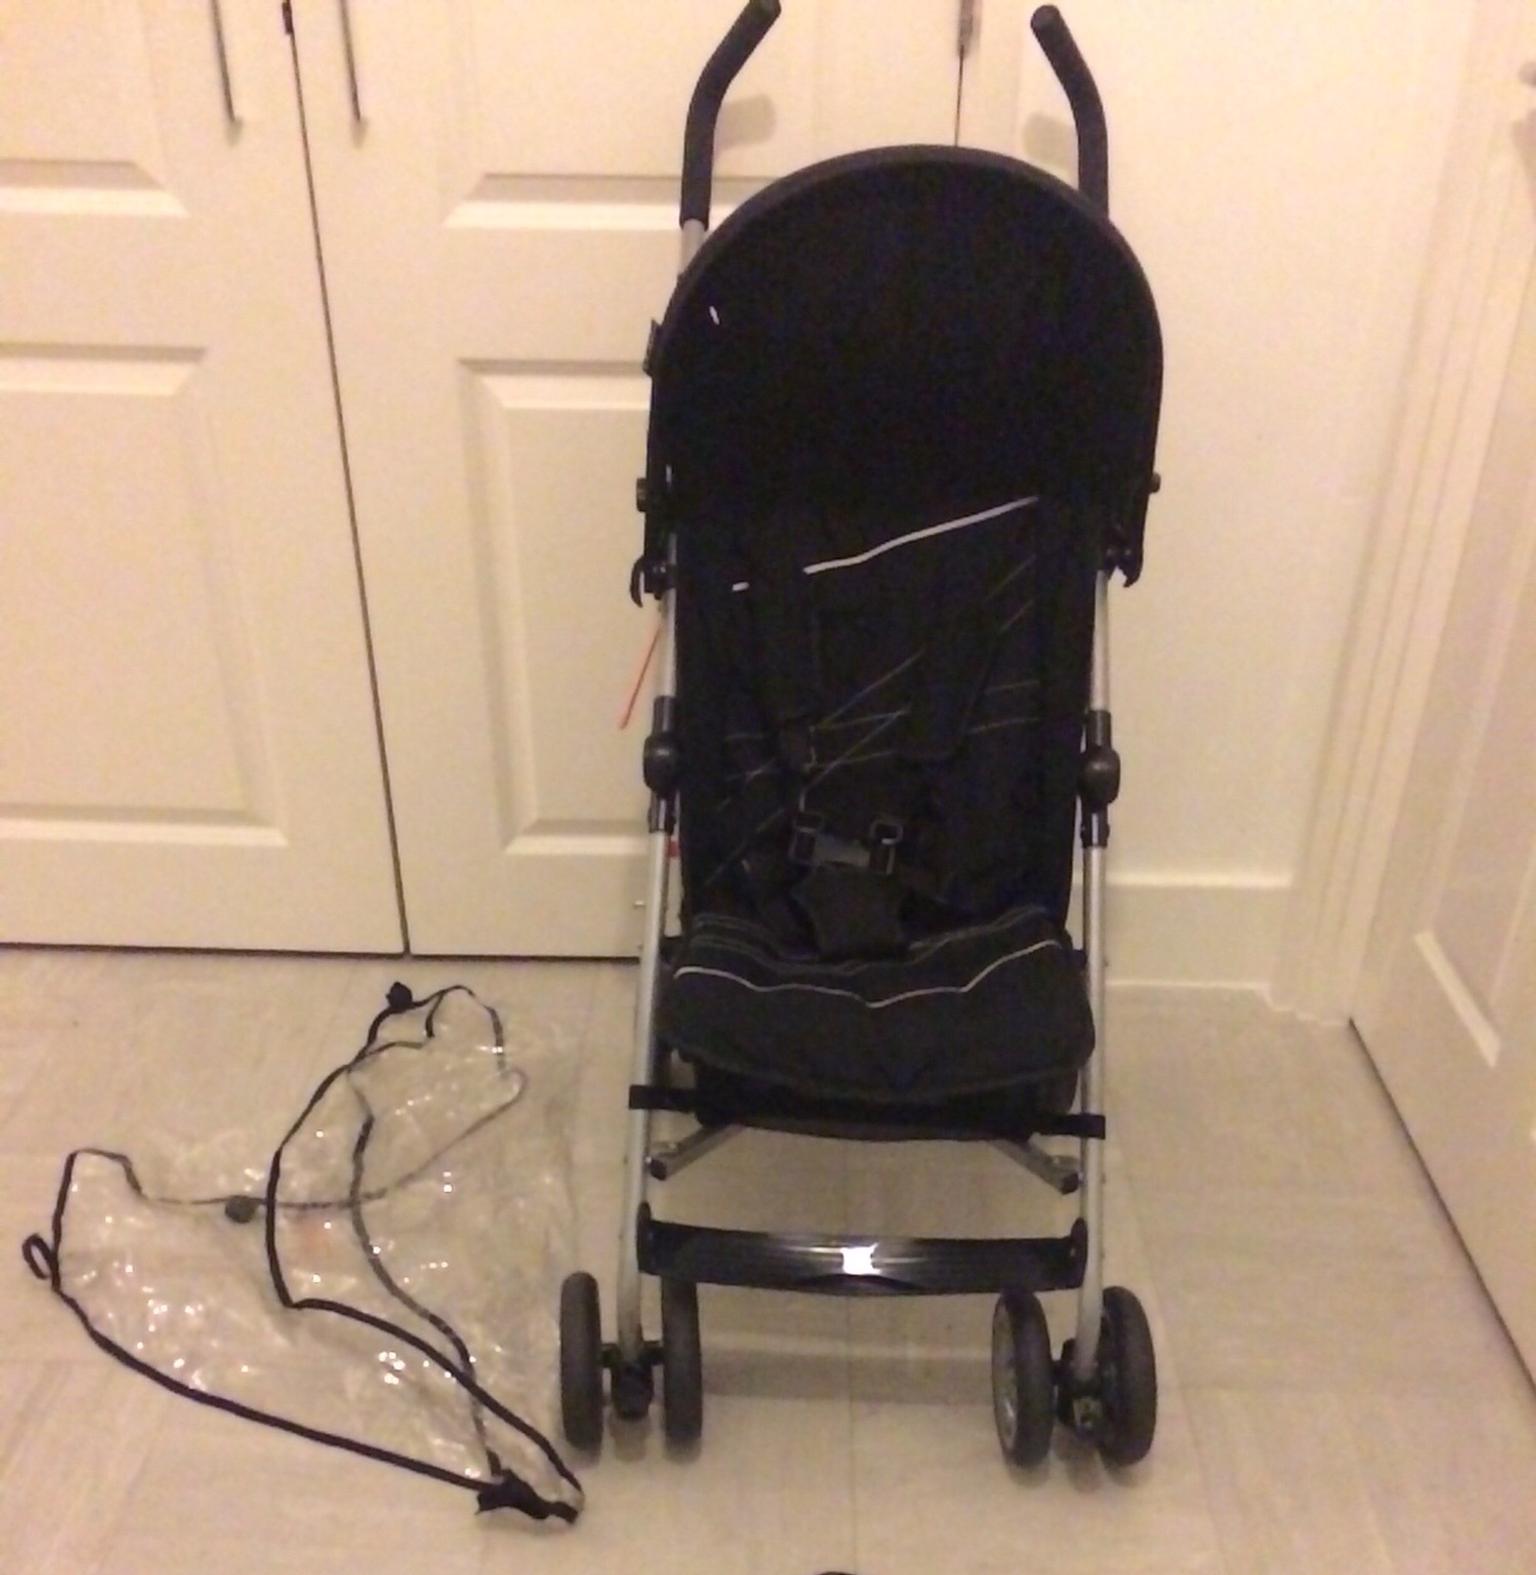 kiddicare stroller